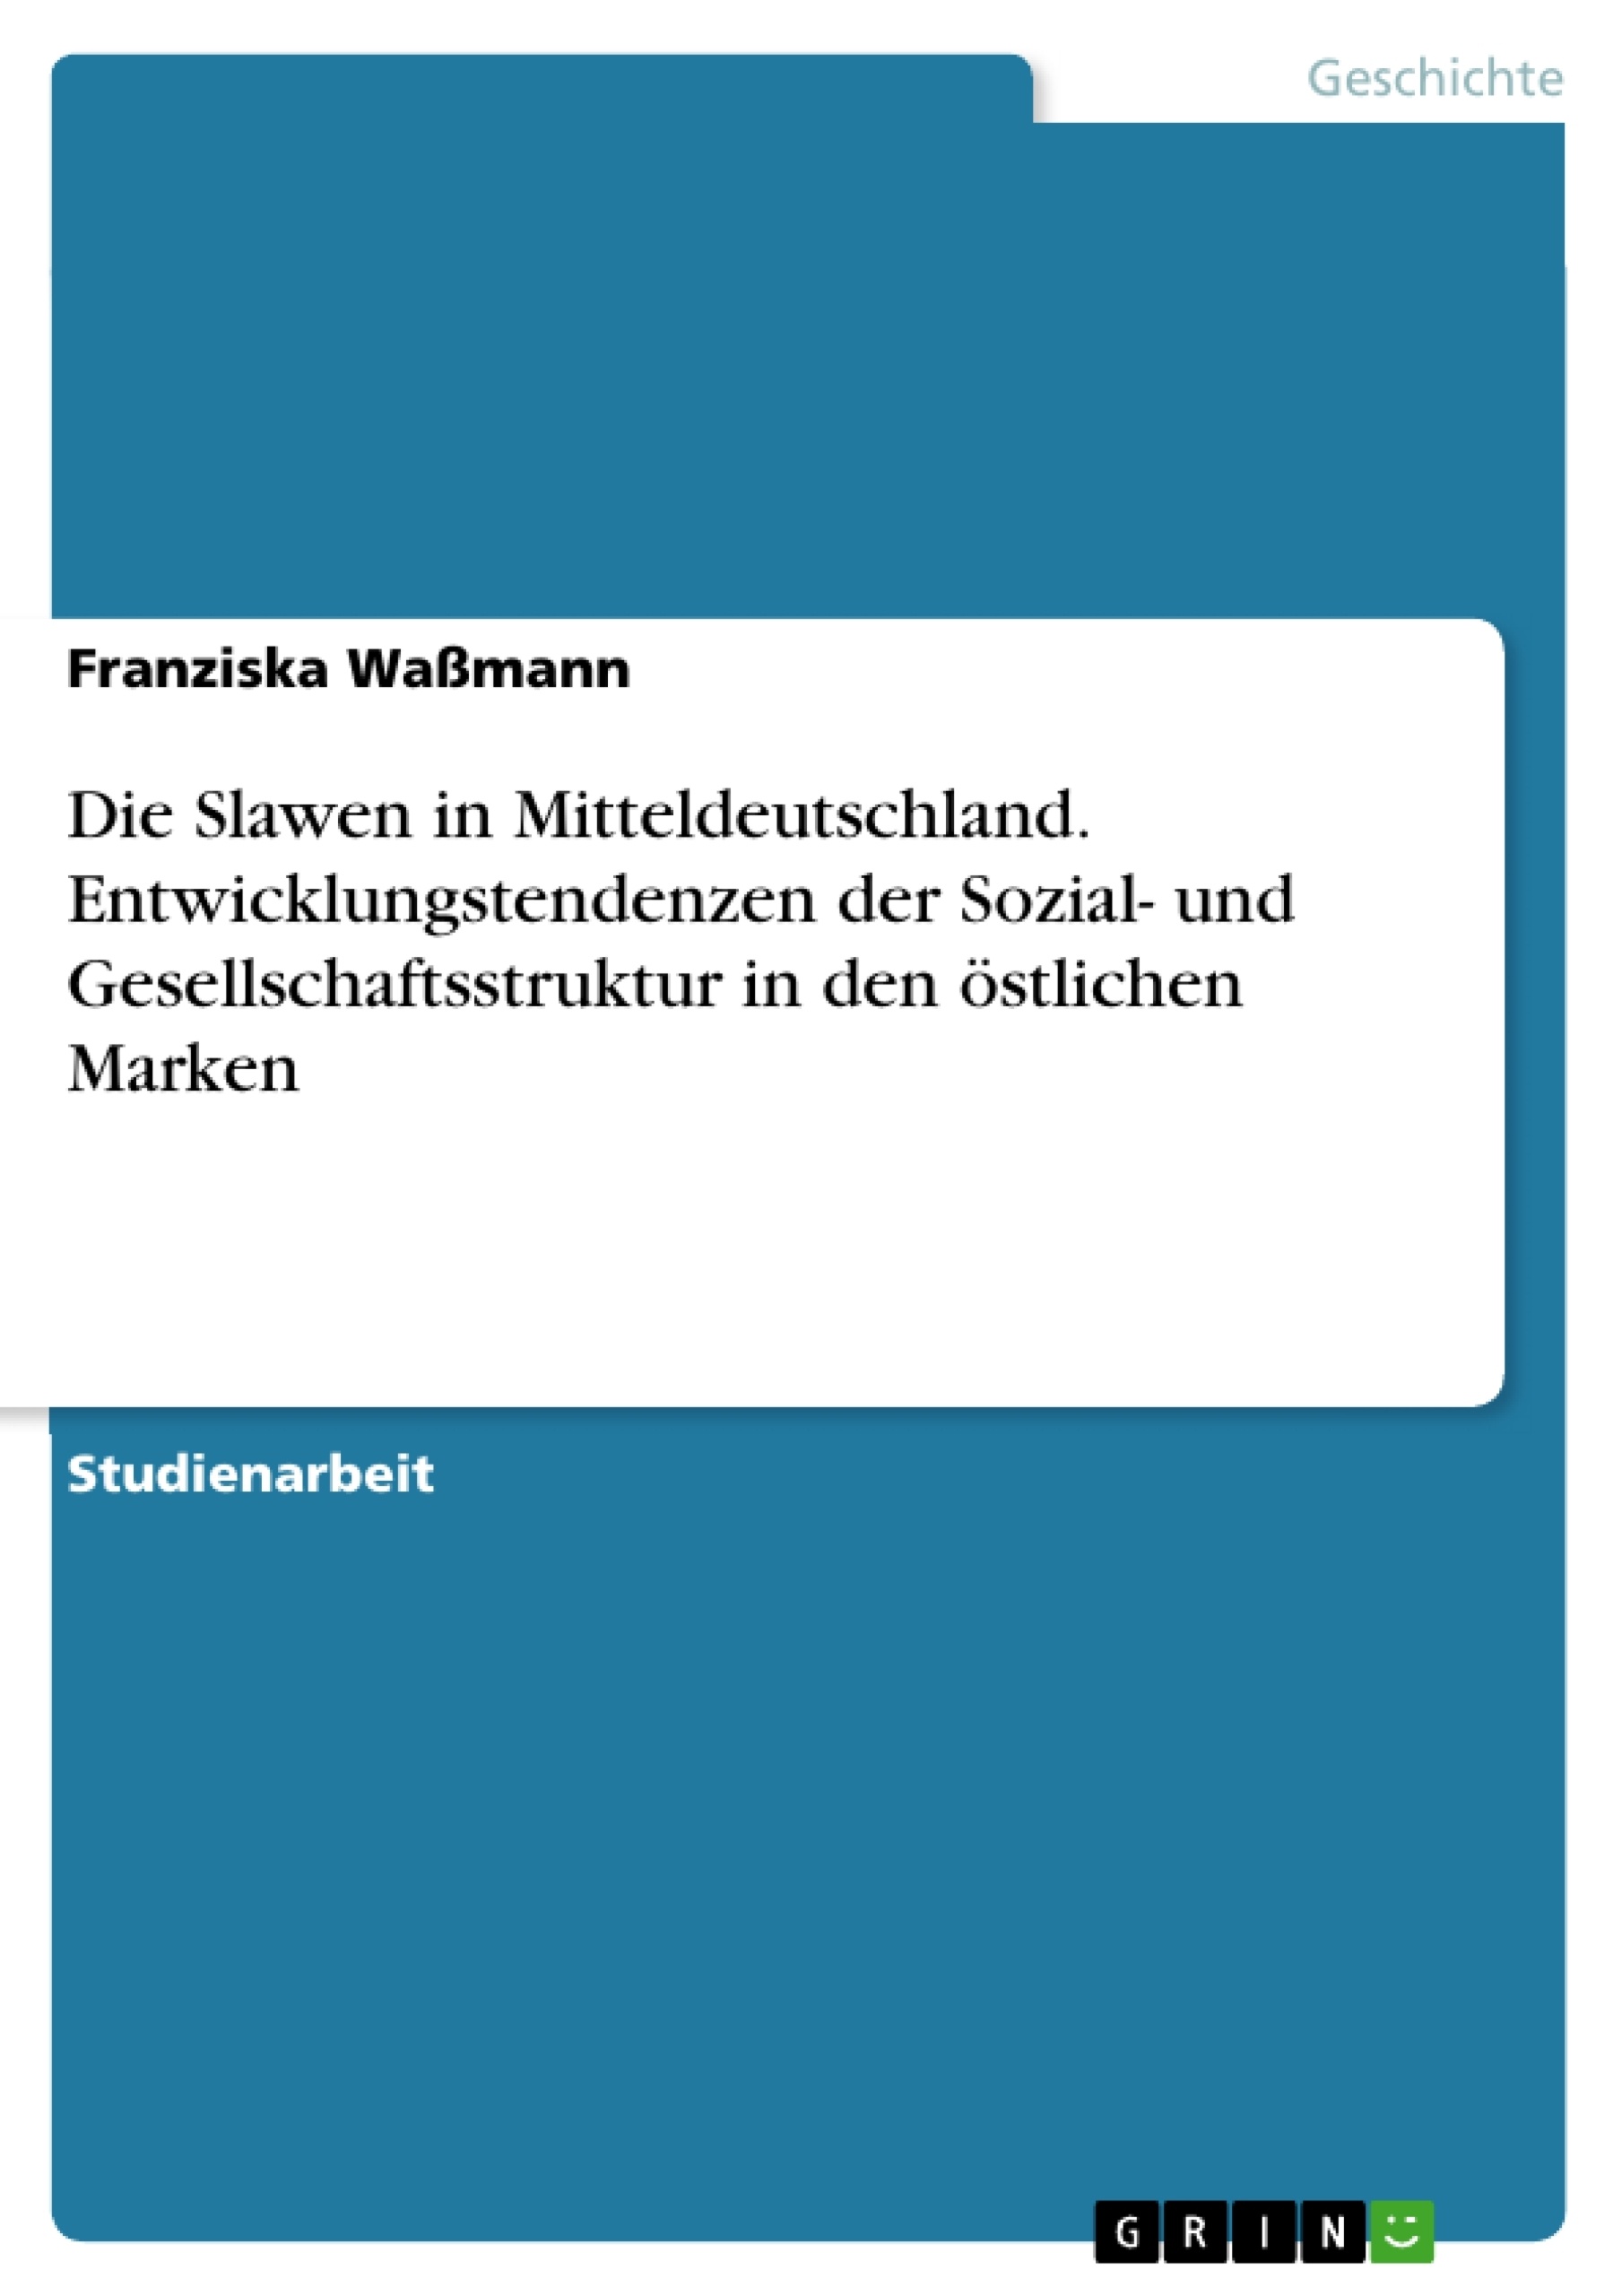 Titre: Die Slawen in Mitteldeutschland. Entwicklungstendenzen der Sozial- und Gesellschaftsstruktur in den östlichen Marken